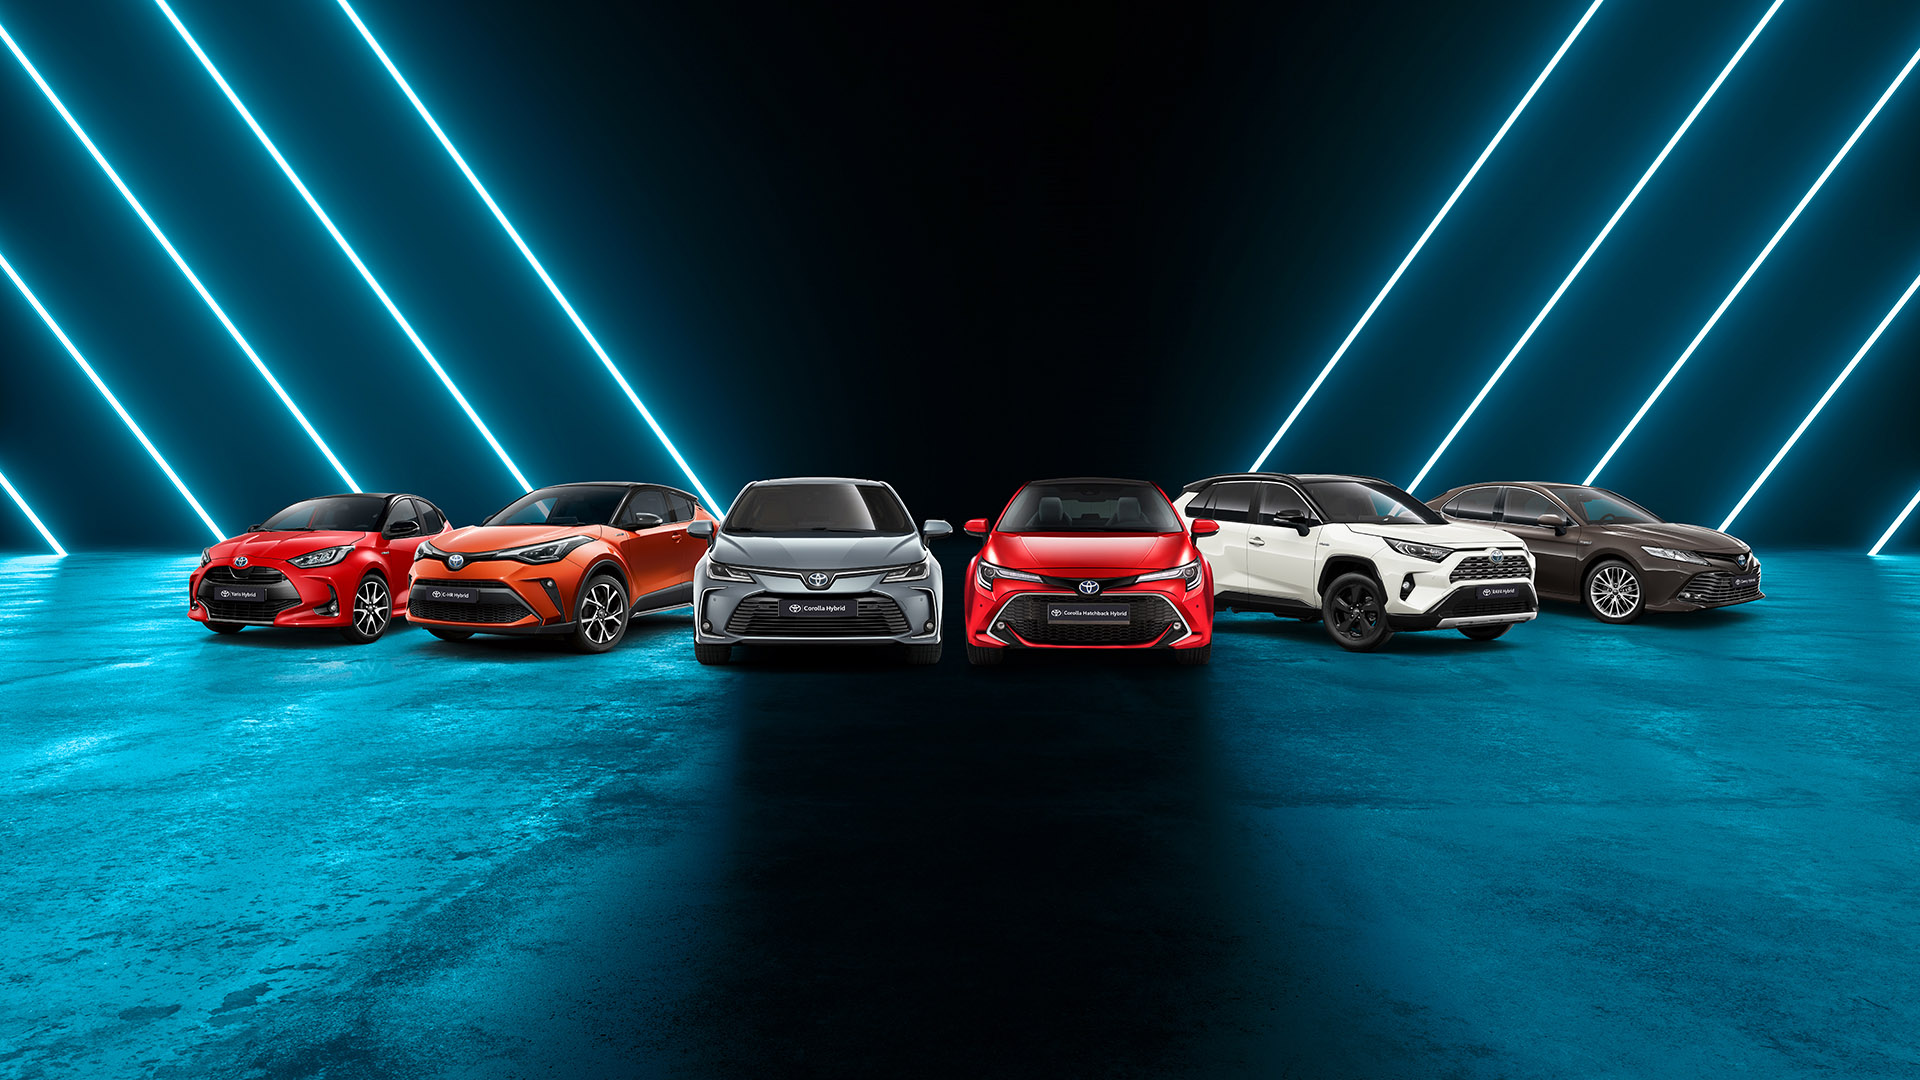 Toyota Avrupa'da 1.5 milyon Sıfır Emisyonlu Araç Satışı Hedefliyor